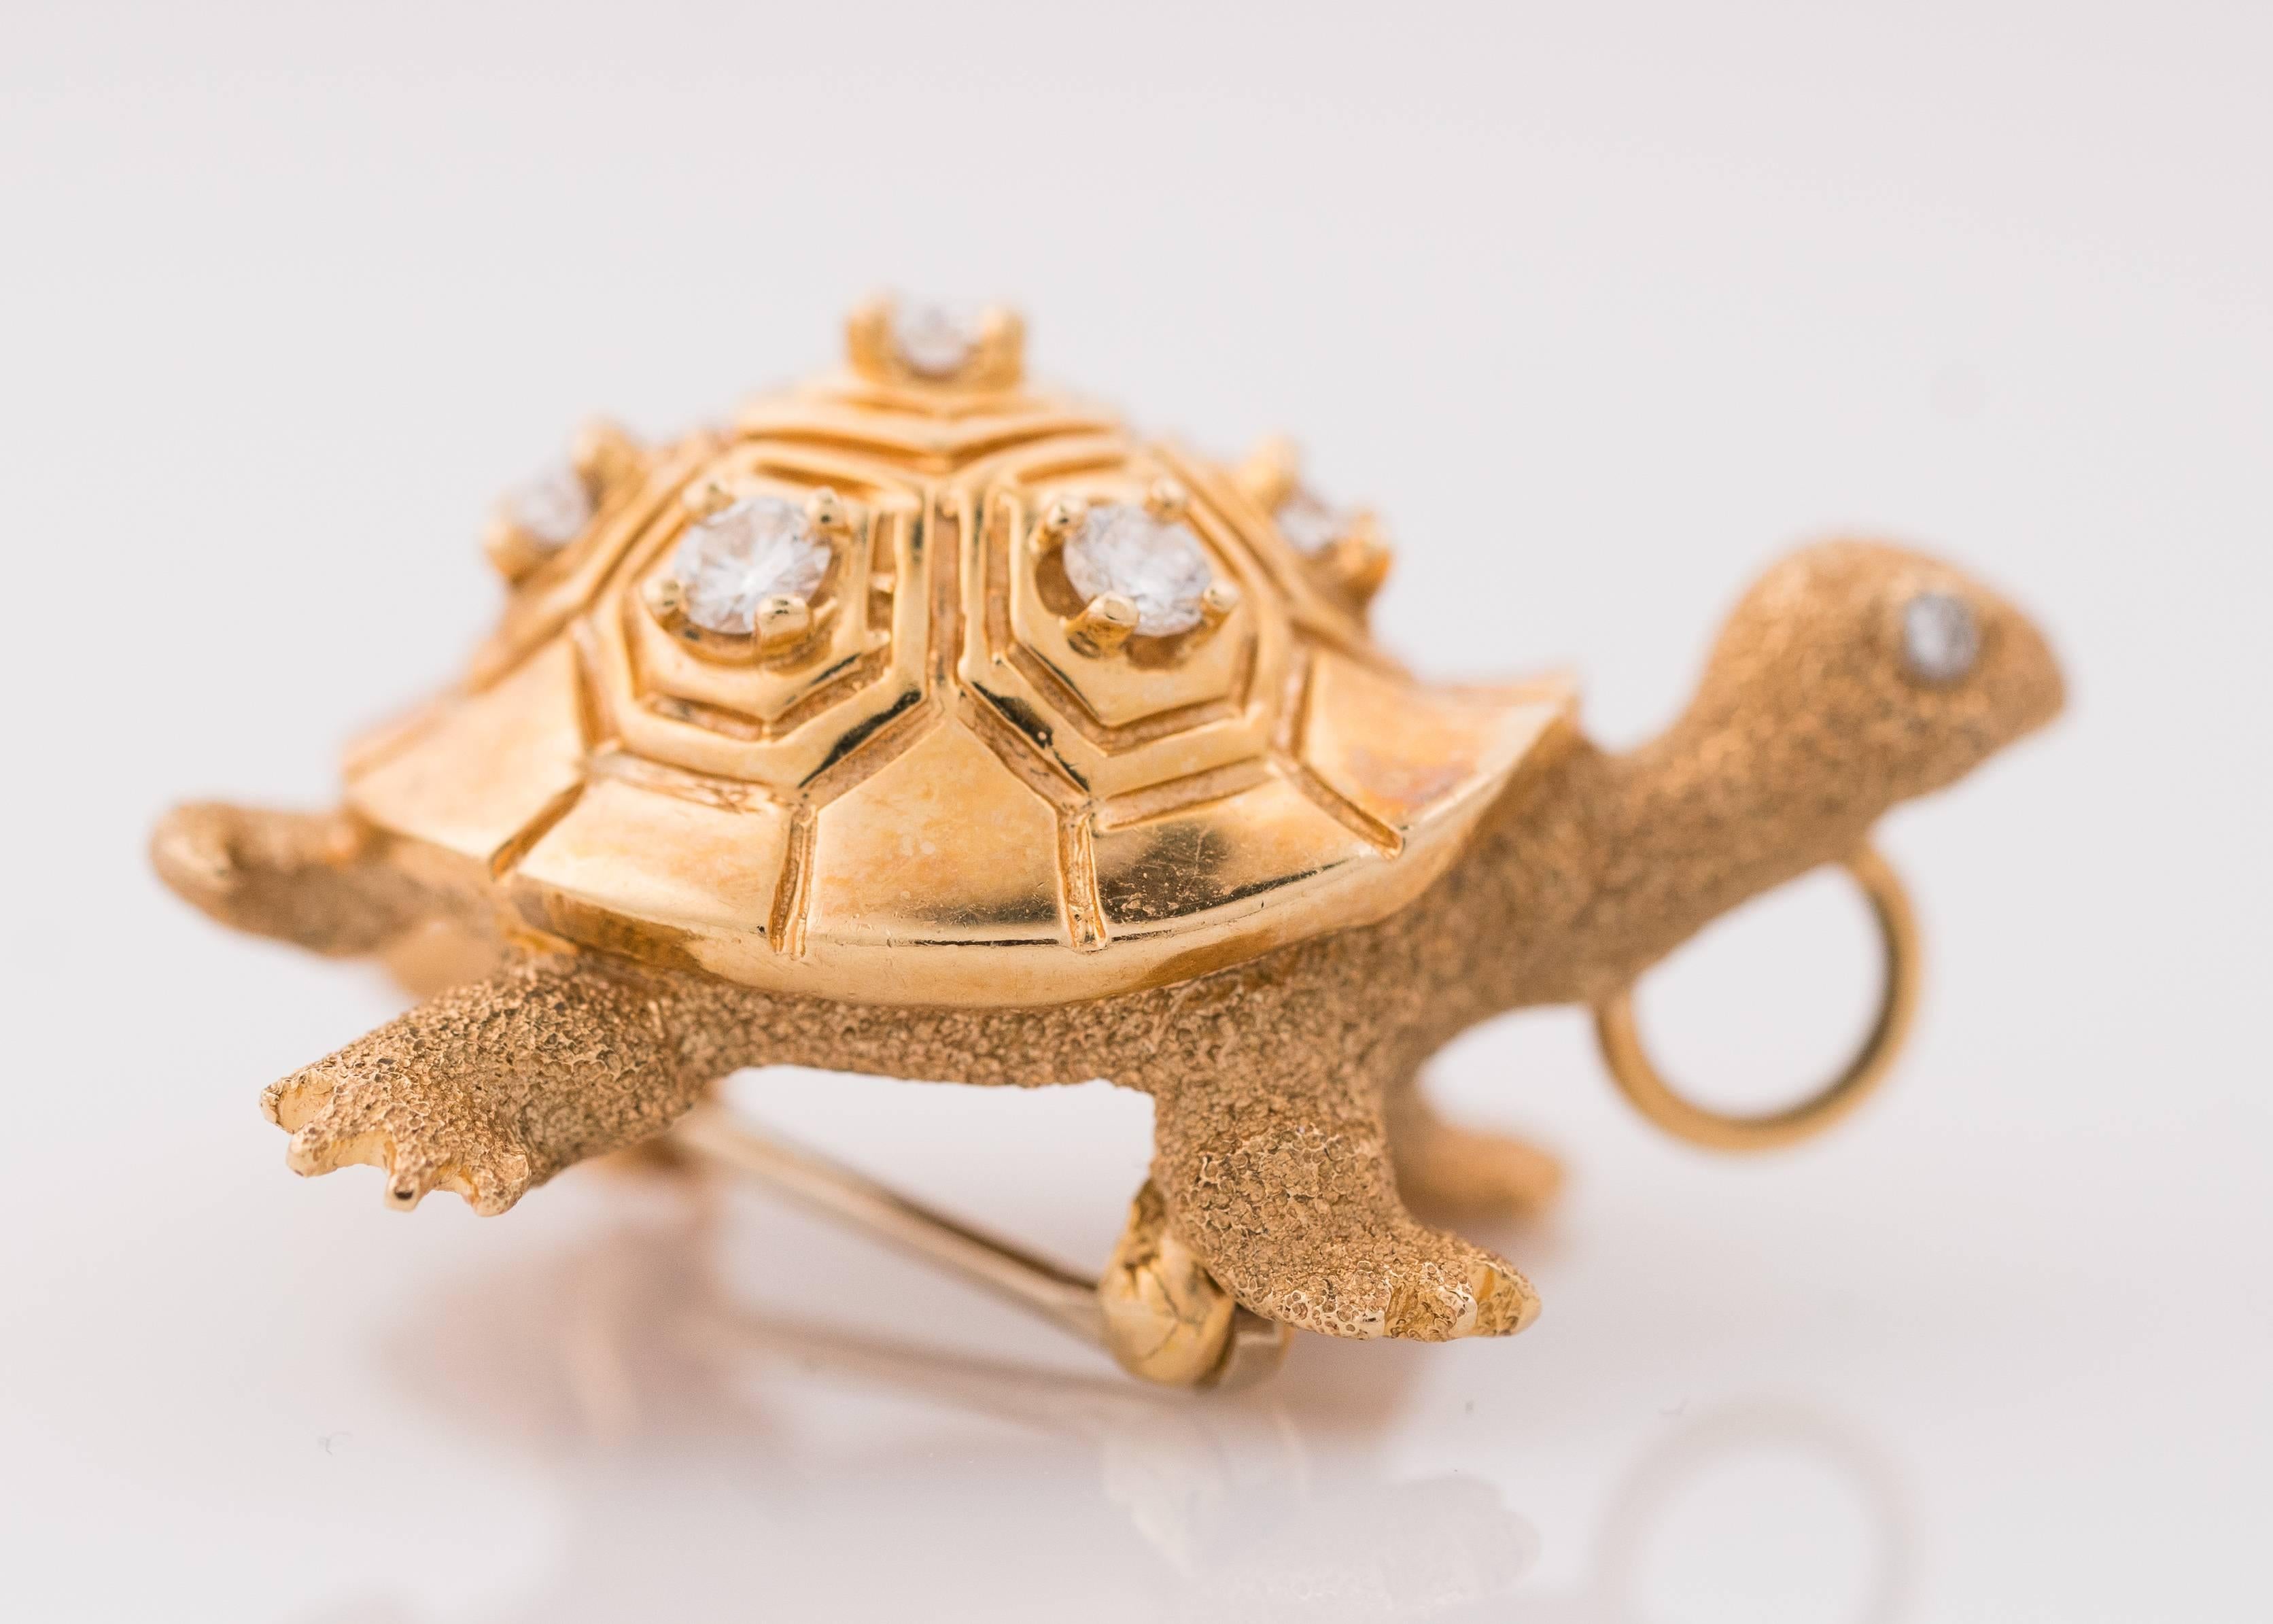 Broche tortue des années 1950, or jaune 14K et diamants. Les diamants ronds et brillants pèsent 0,40 carats. Cette épingle à tortue aux détails exquis possède des pattes, une tête, une queue et un corps en finition sable. La carapace très polie est